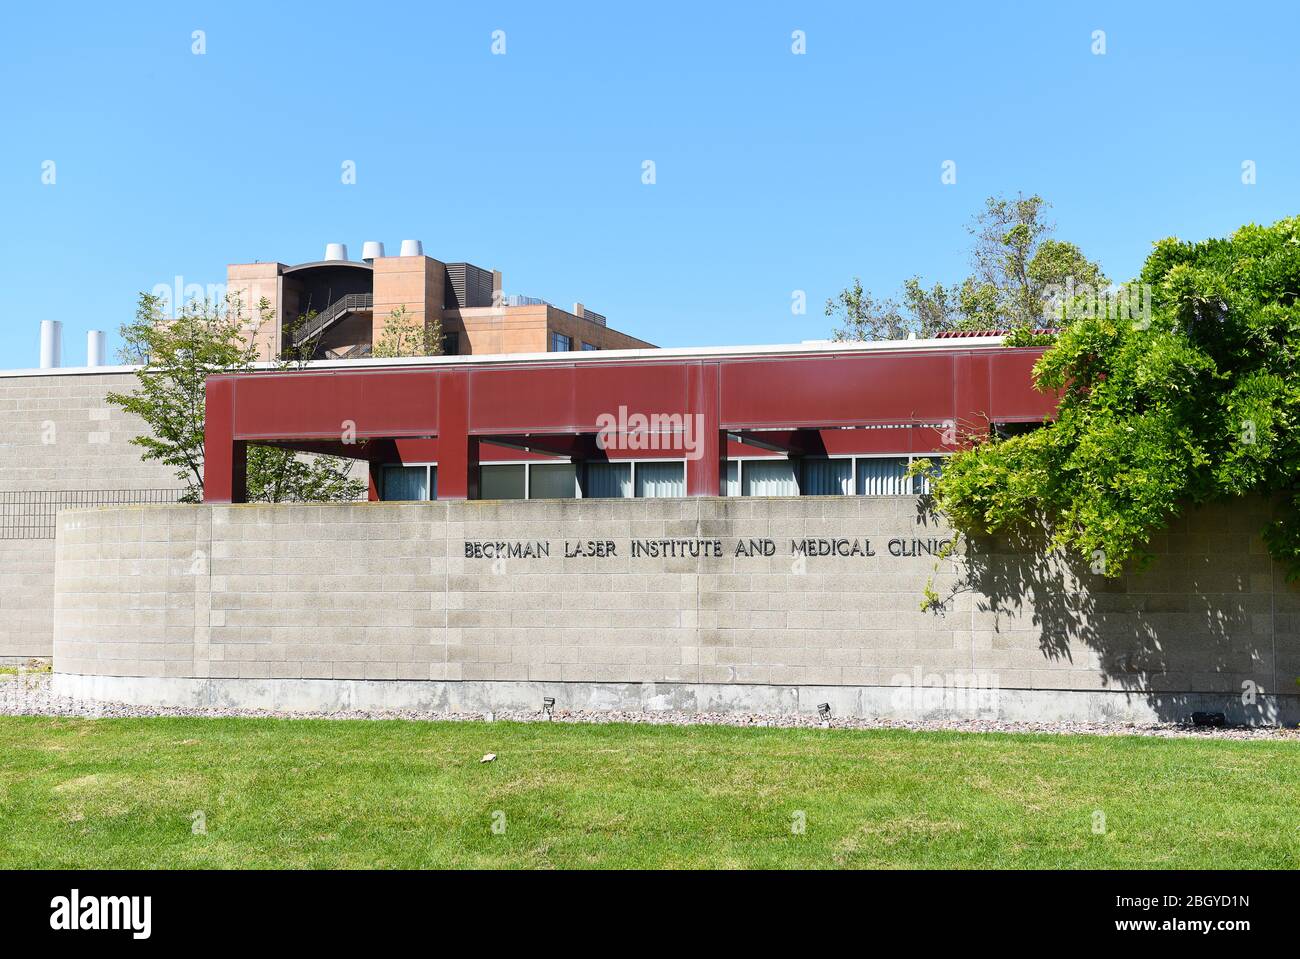 IRVINE, CALIFORNIA - 22 APRILE 2020: Il Beckman laser Institute and Medical Clinic, sul campus dell'Università della California Irvine, UCI. Foto Stock